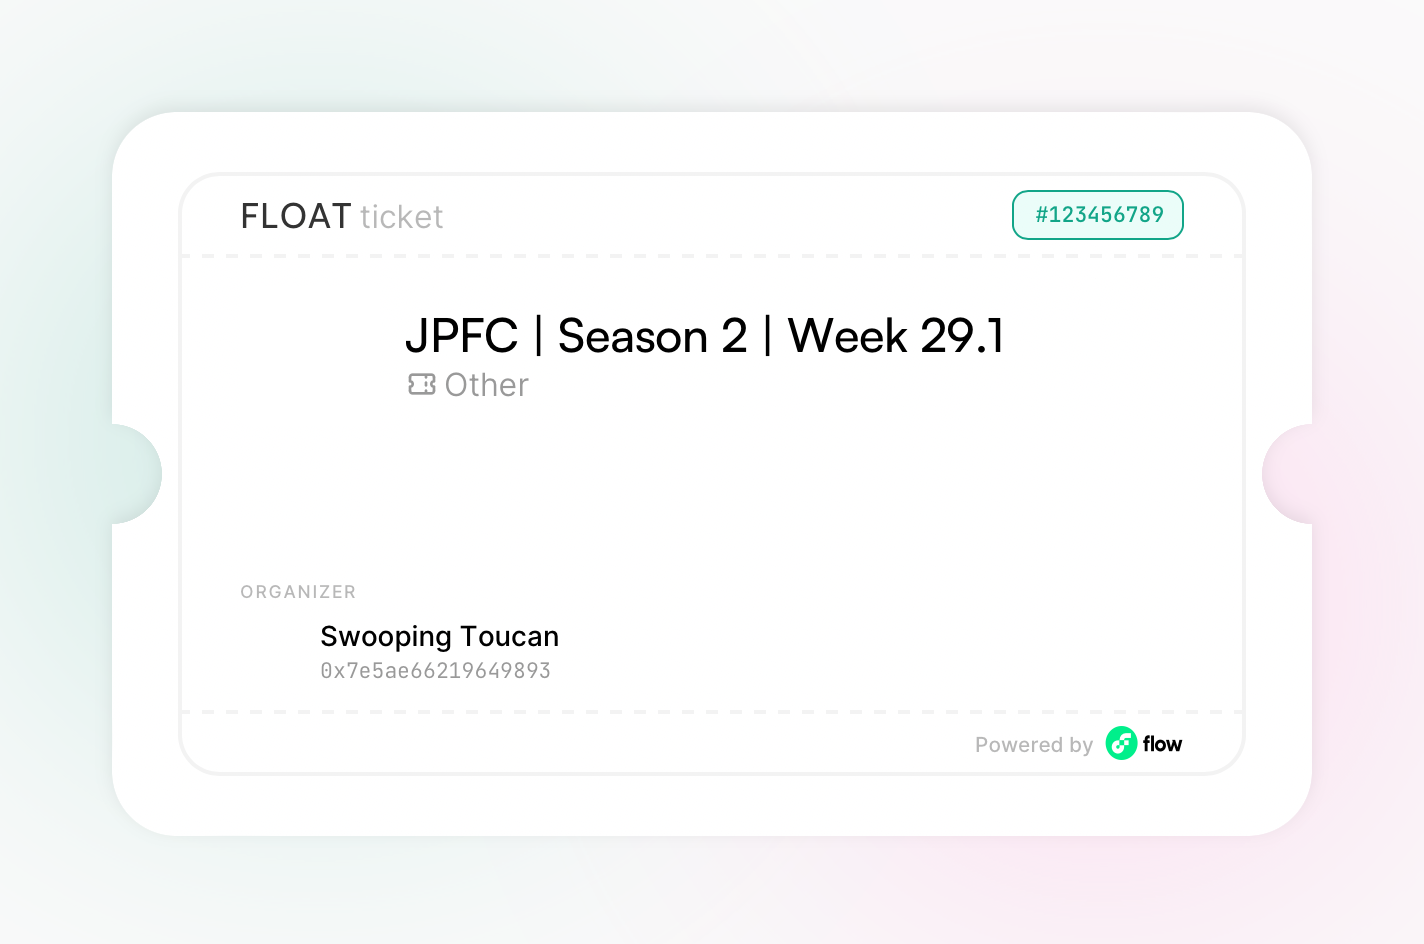 JPFC | Season 2 | Week 29.1 asset